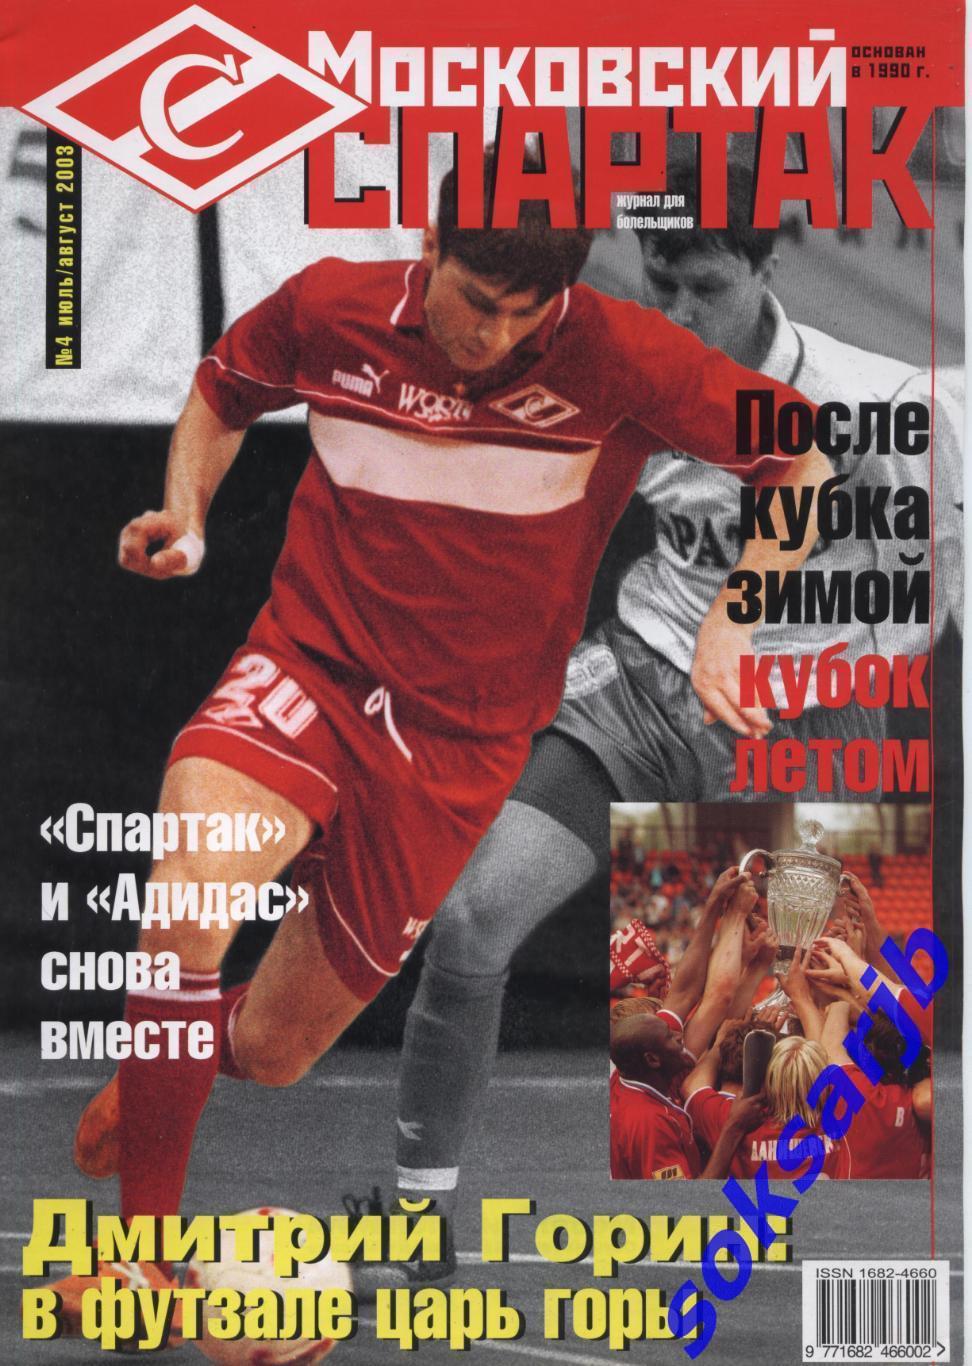 2003. Журнал Московский Спартак. №4. июль - август.